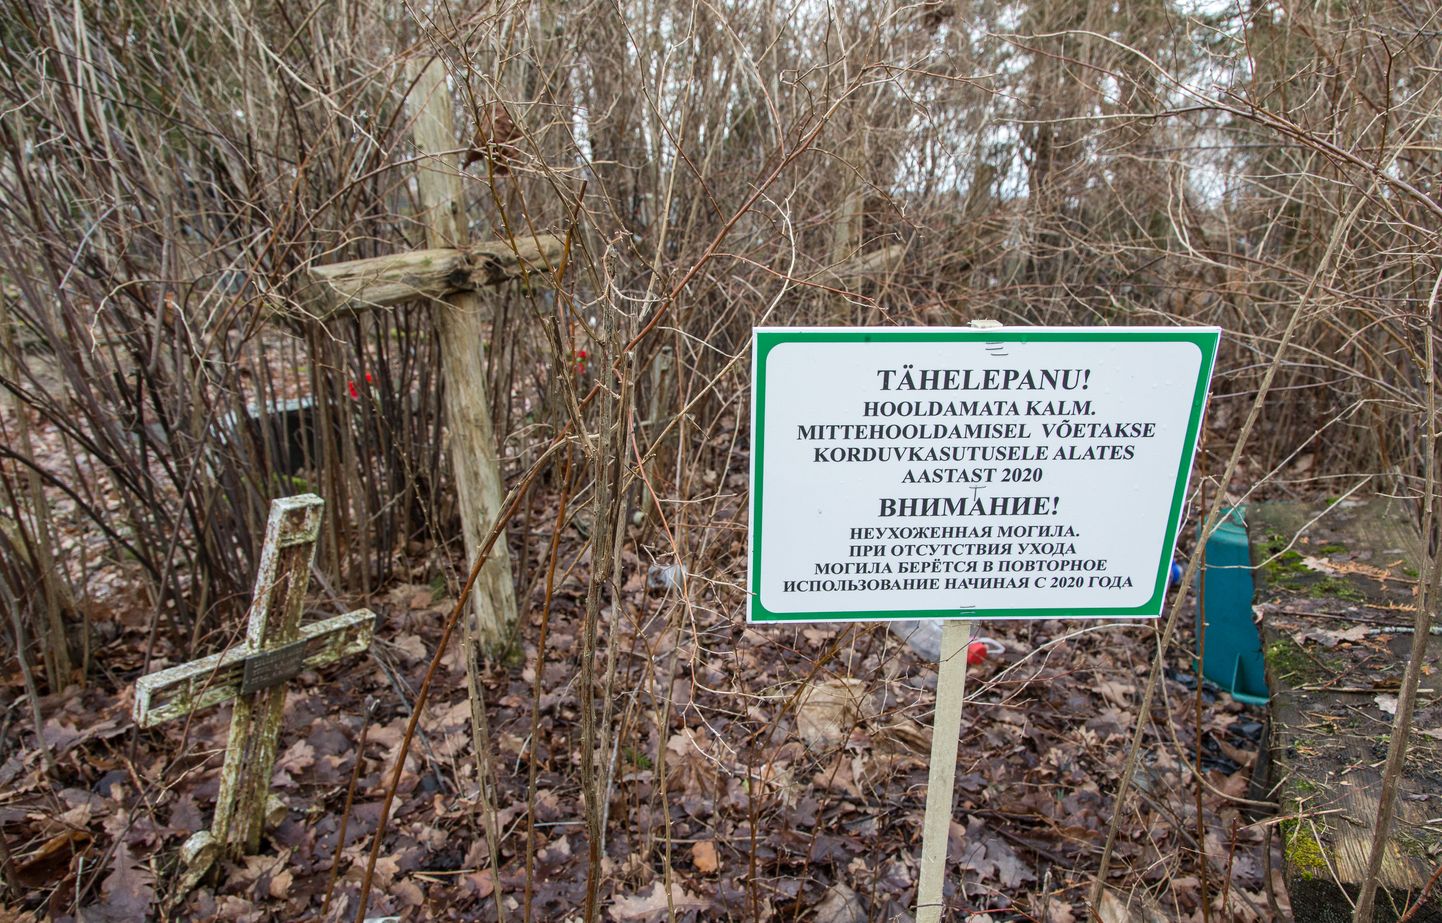 Два года назад на заброшенных могилах на Йыхвиском кладбище начали устанавливать таблички с предупреждением о передаче участков в повторное использование. Несмотря на это, никто не пришел оформить могильные участки.